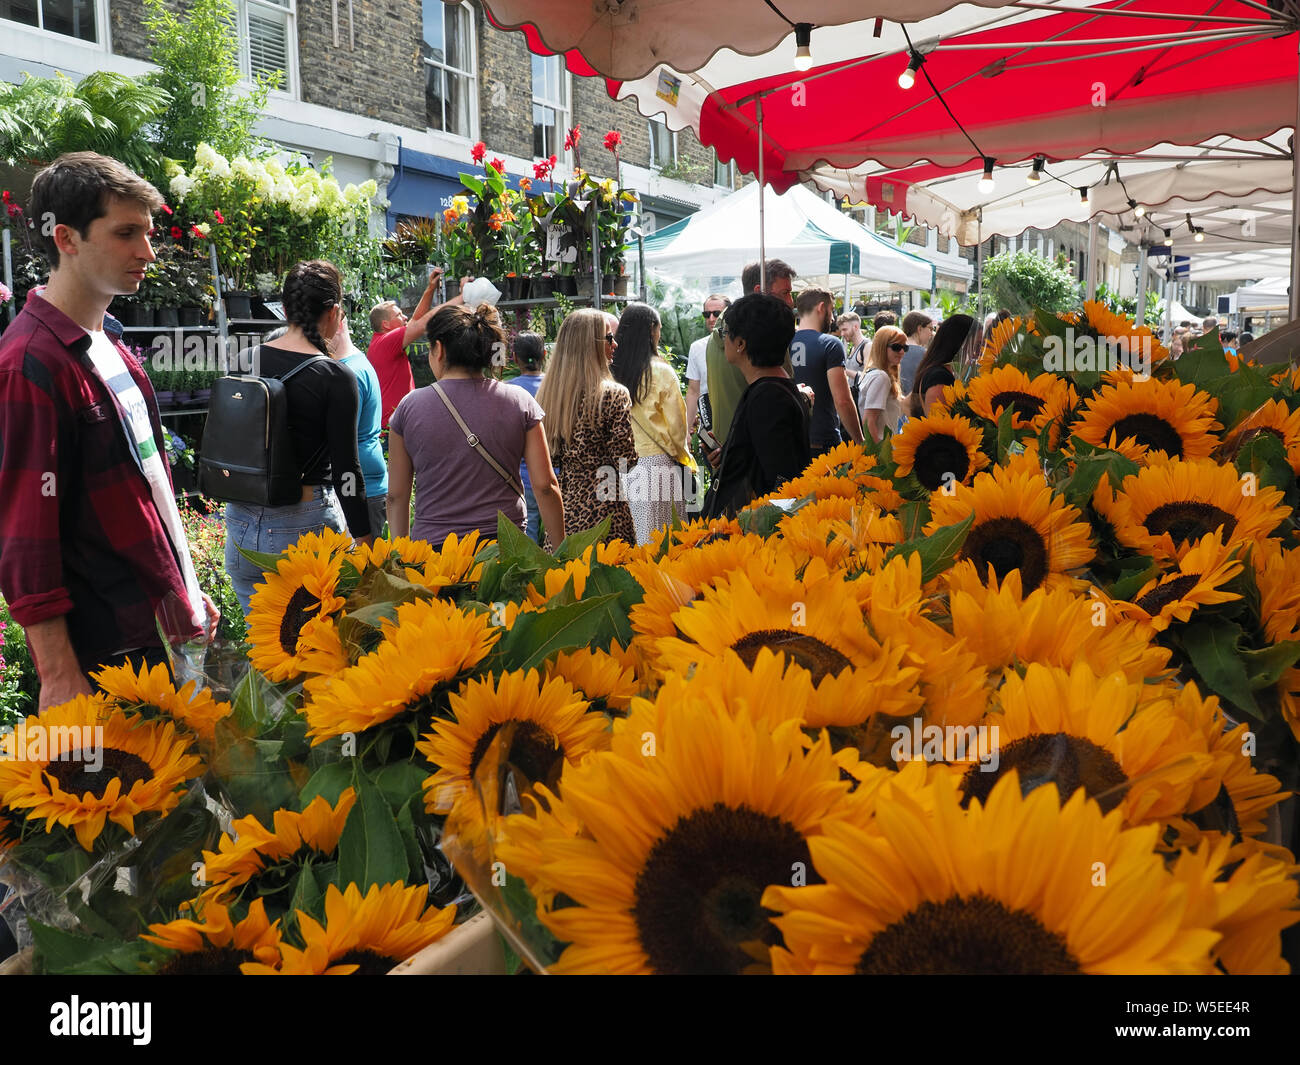 Anzeigen von Sonnenblumen zum Verkauf auf einen Markt in der beliebten Columbia Road Blumenmarkt in Bethnal Green in London Abschaltdruck Stockfoto